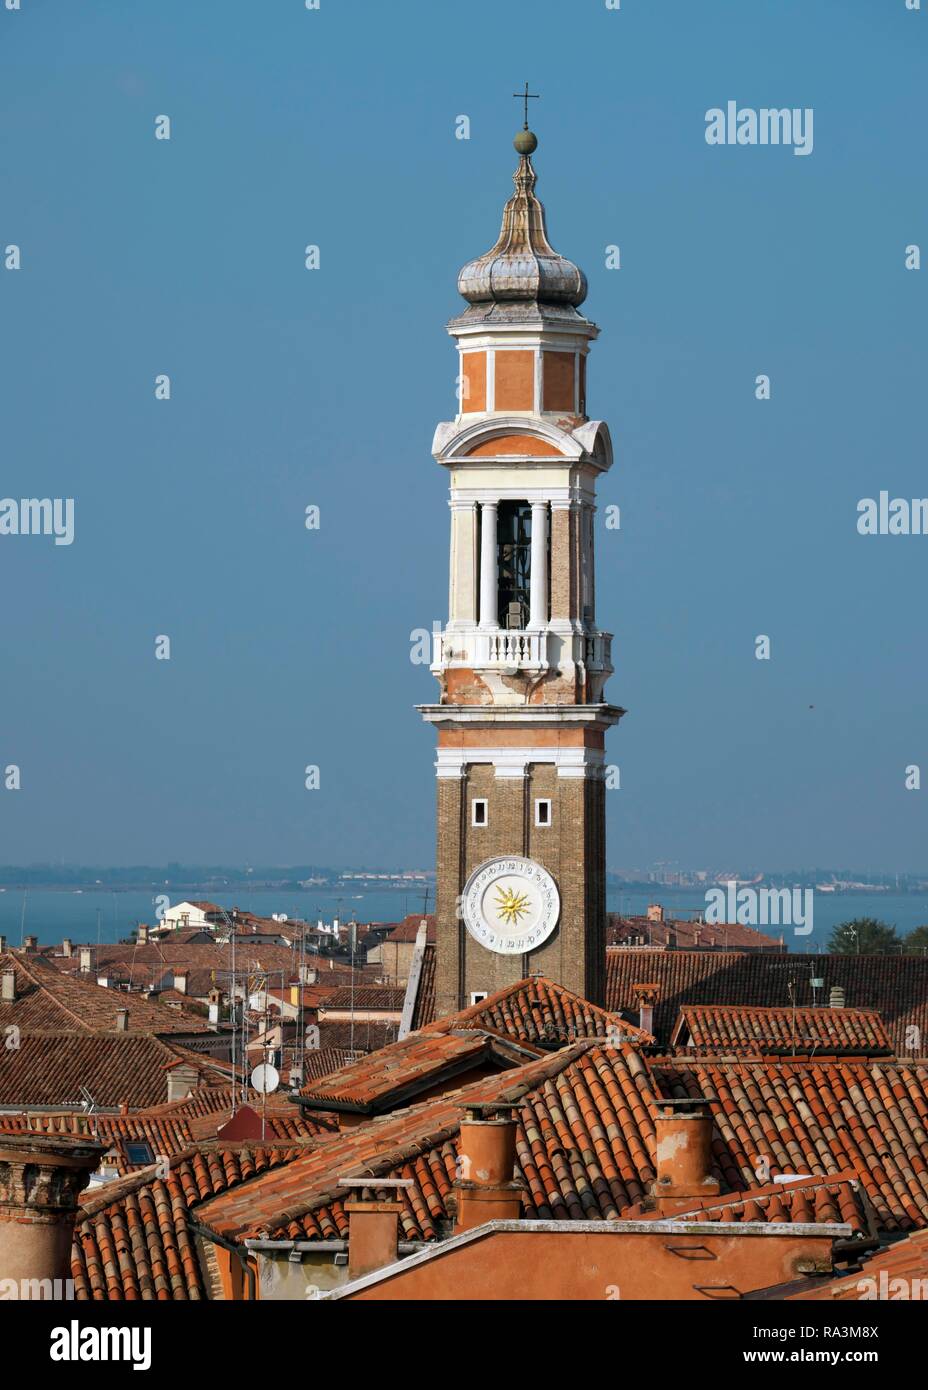 La torre de la Iglesia, la Chiesa dei Santi Apostoli iglesia, Venecia, Véneto, Italia Foto de stock